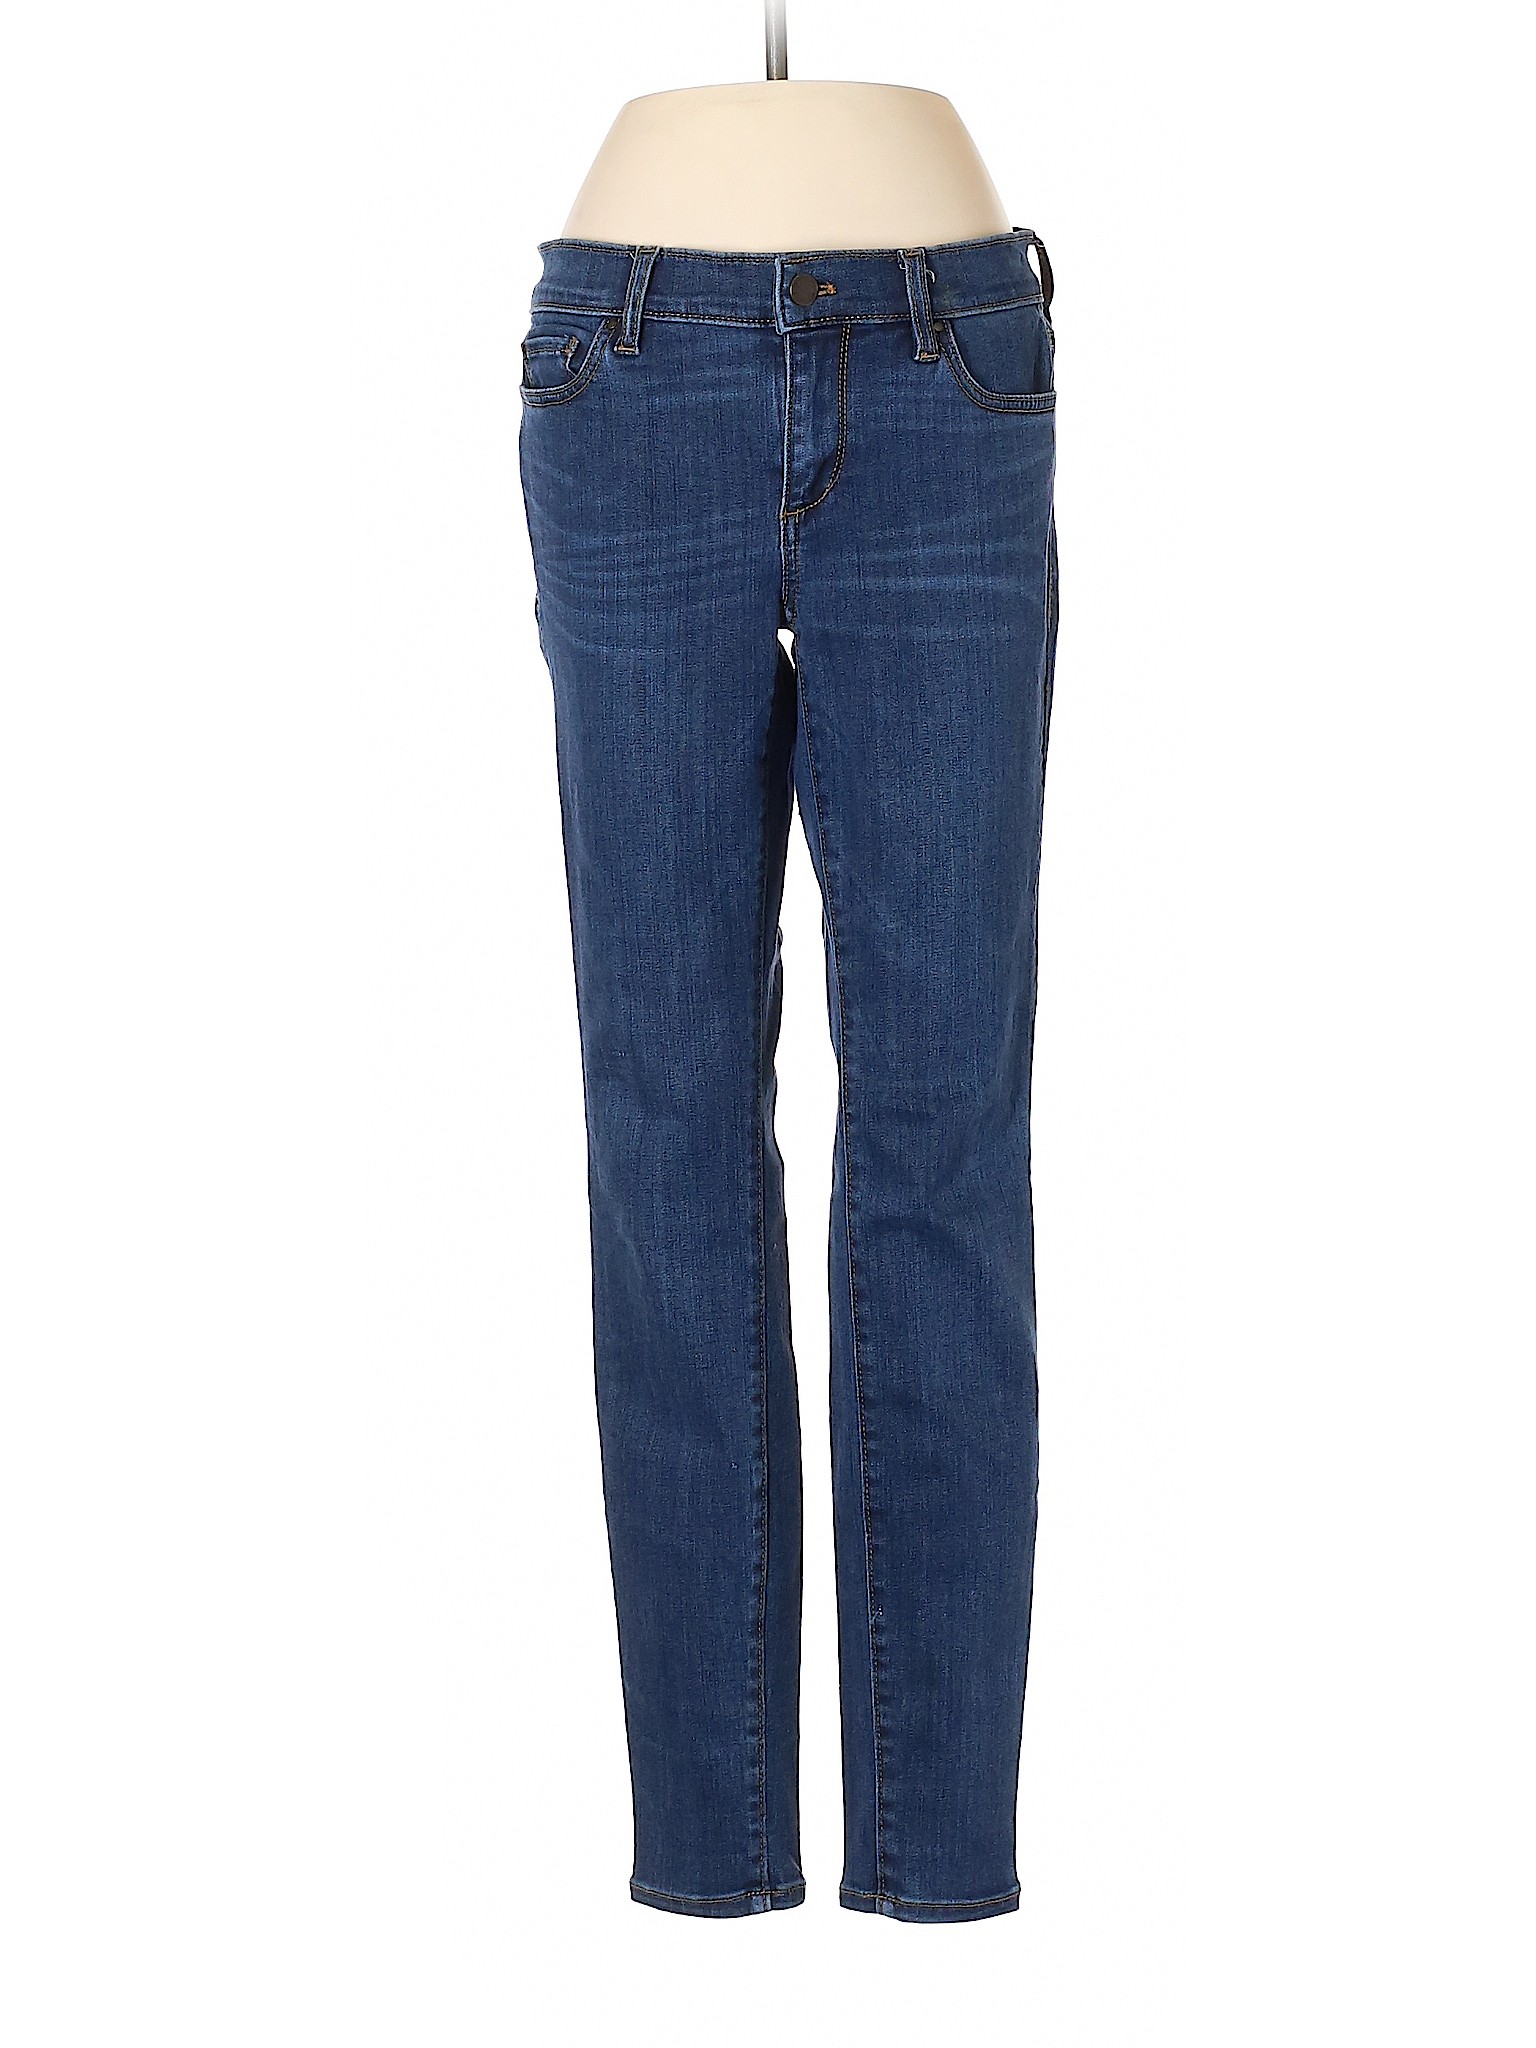 Ann Taylor Women Blue Jeans 2 | eBay